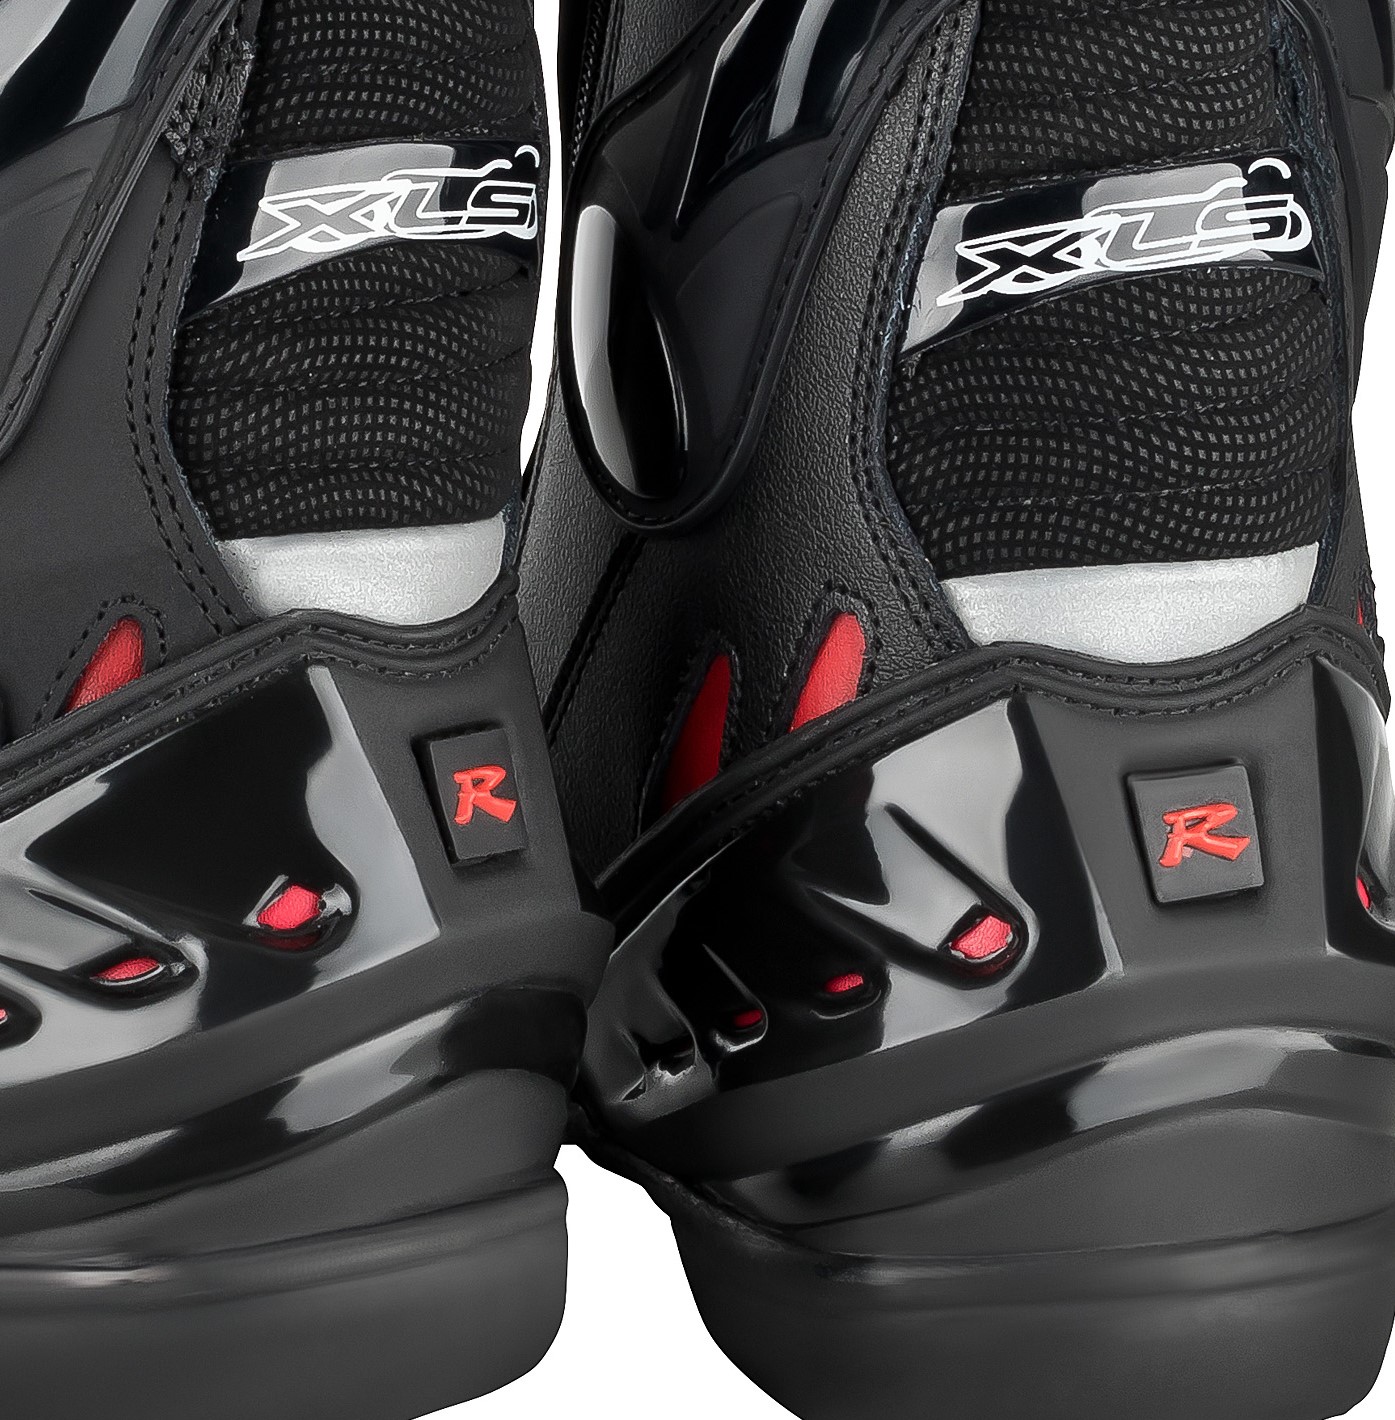 Motorradstiefel hochwertige XLS Boots Touringstiefel schwarz rot Gr 45 und 46 